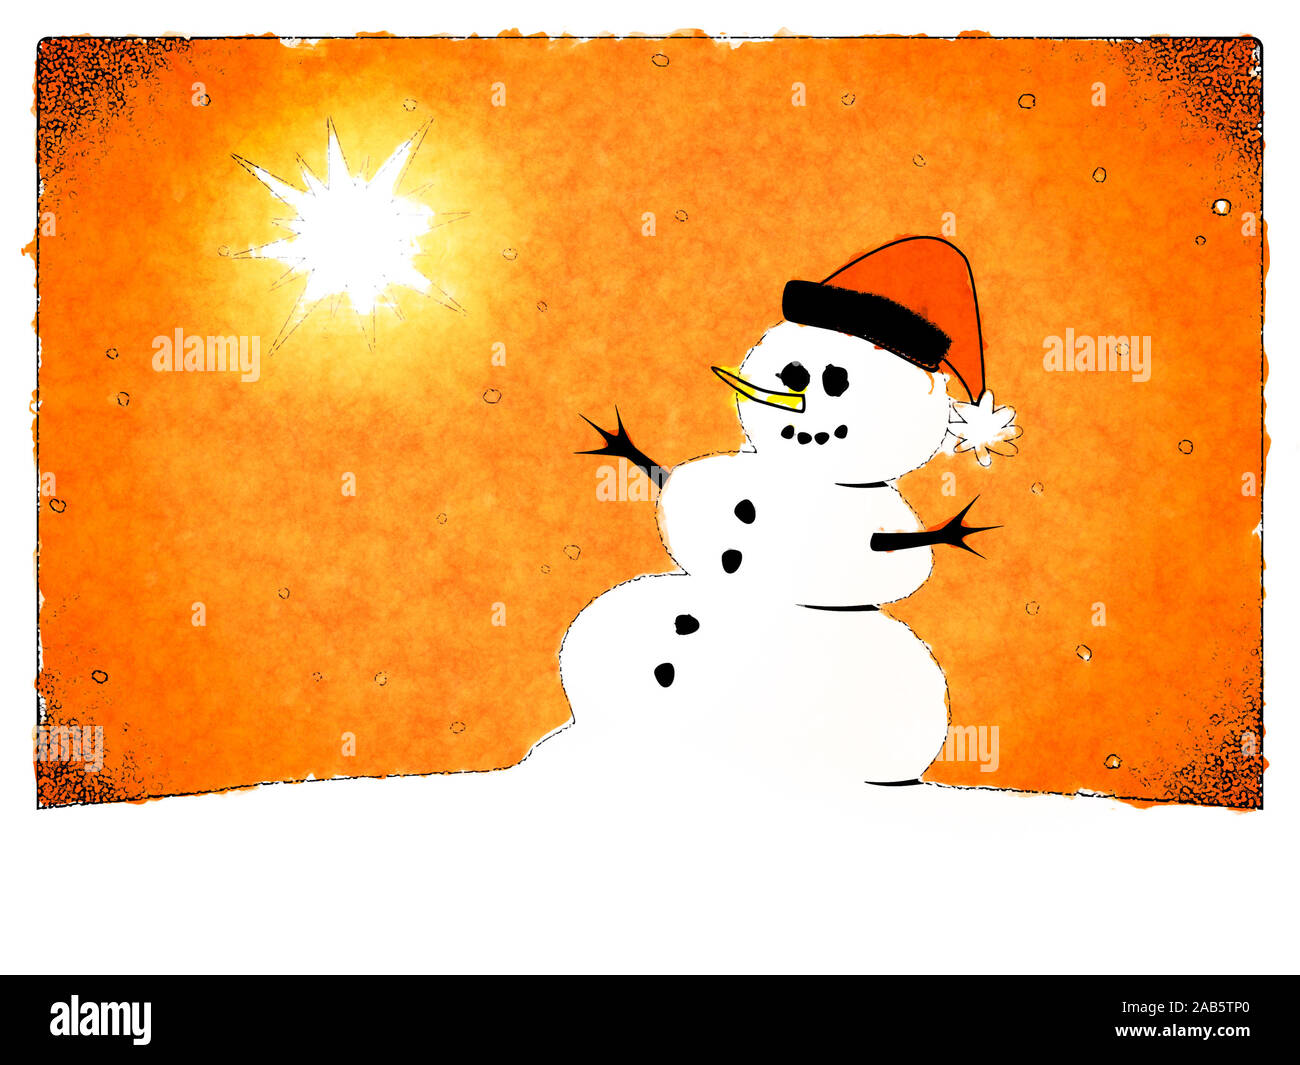 Eine Weihnachtskarte, auf der ein Schneemann zu sehen ist Foto Stock